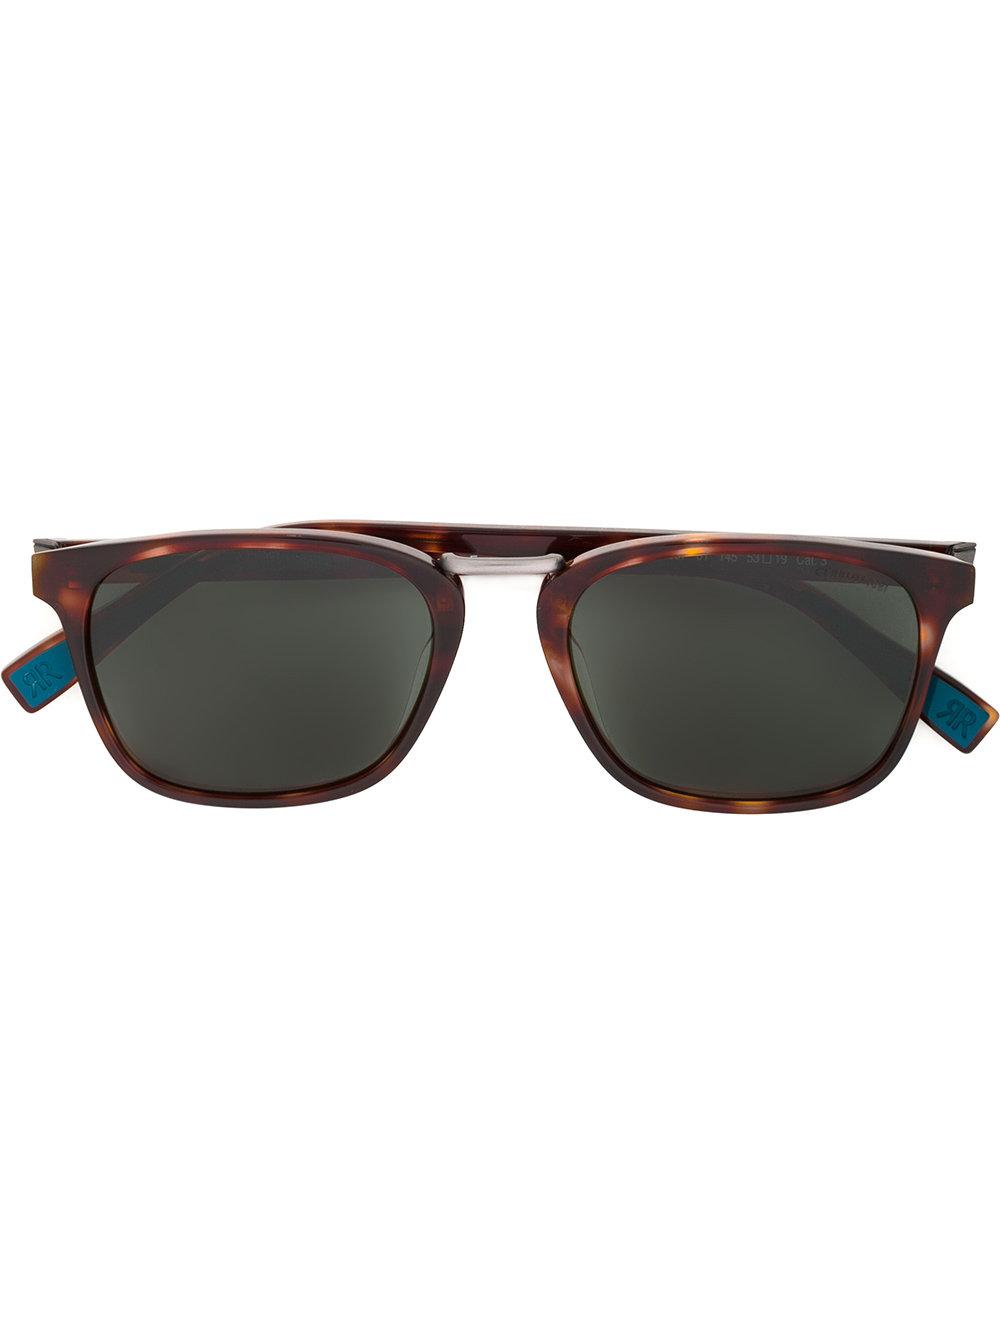 Cerruti 1881 Tortoiseshell Sunglasses in Brown for Men - Lyst